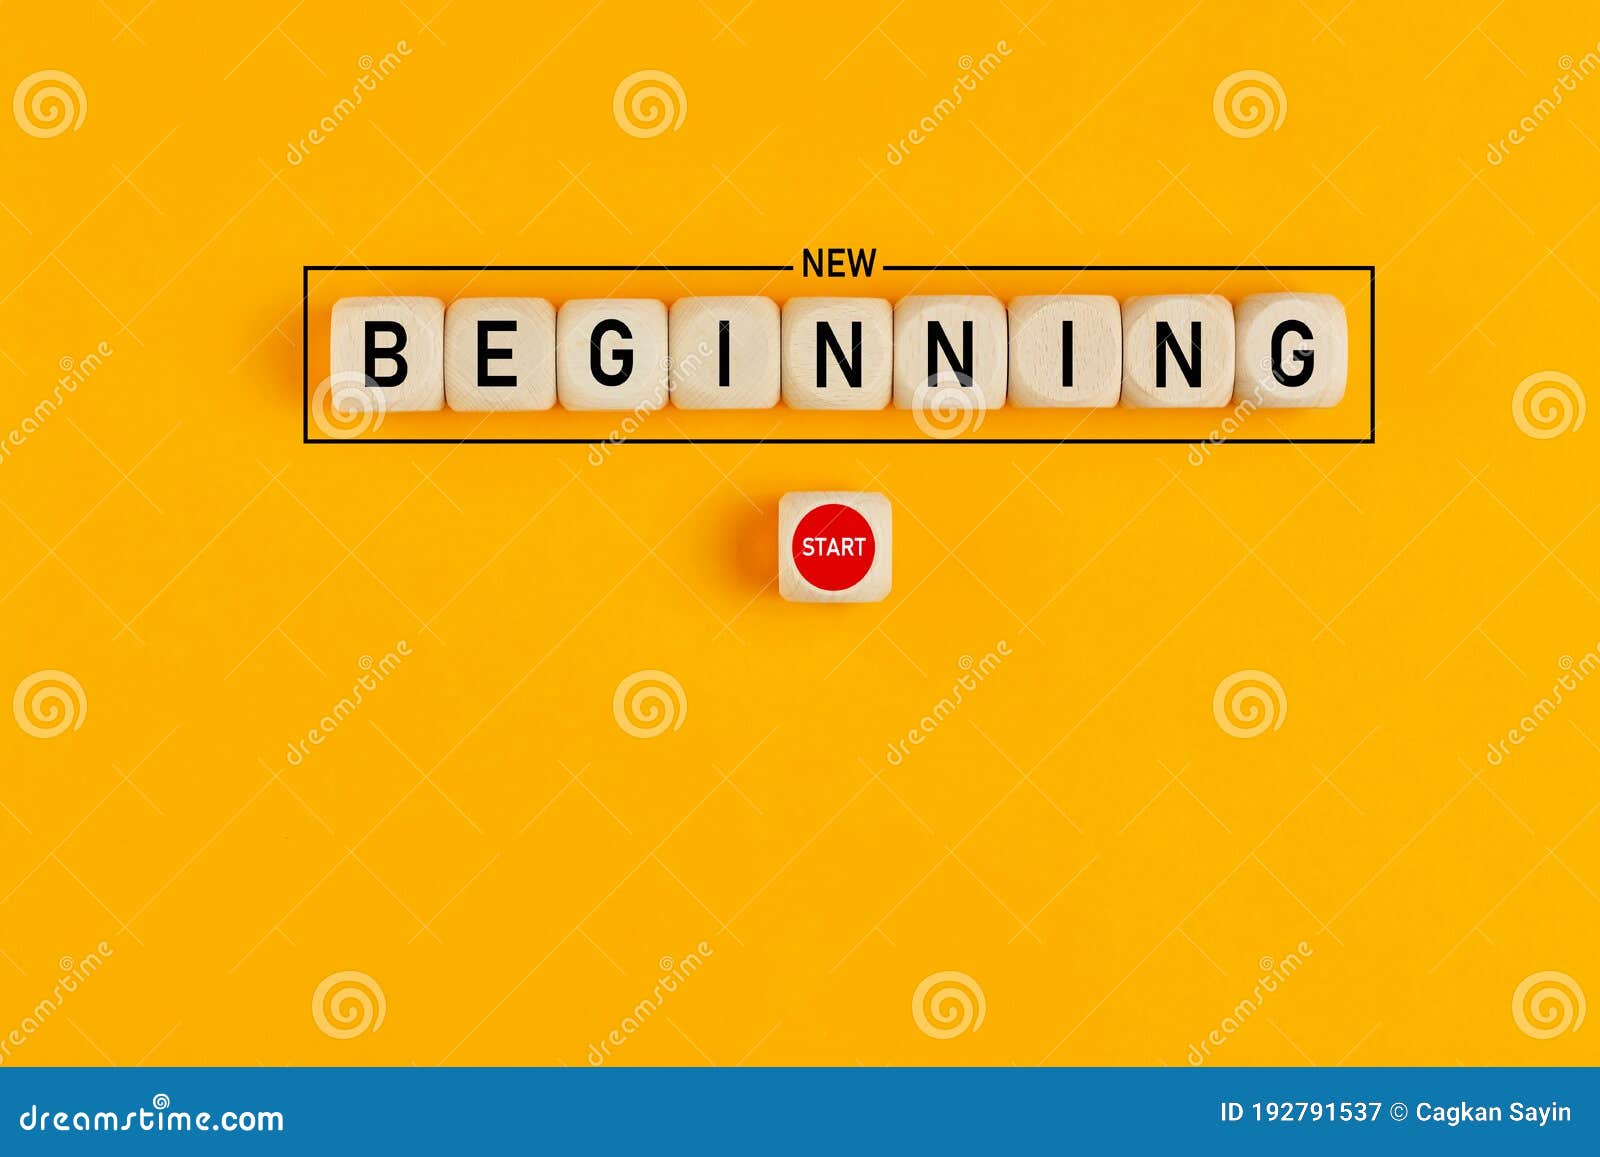 New Beginning New Life  640x1136 Wallpaper  teahubio